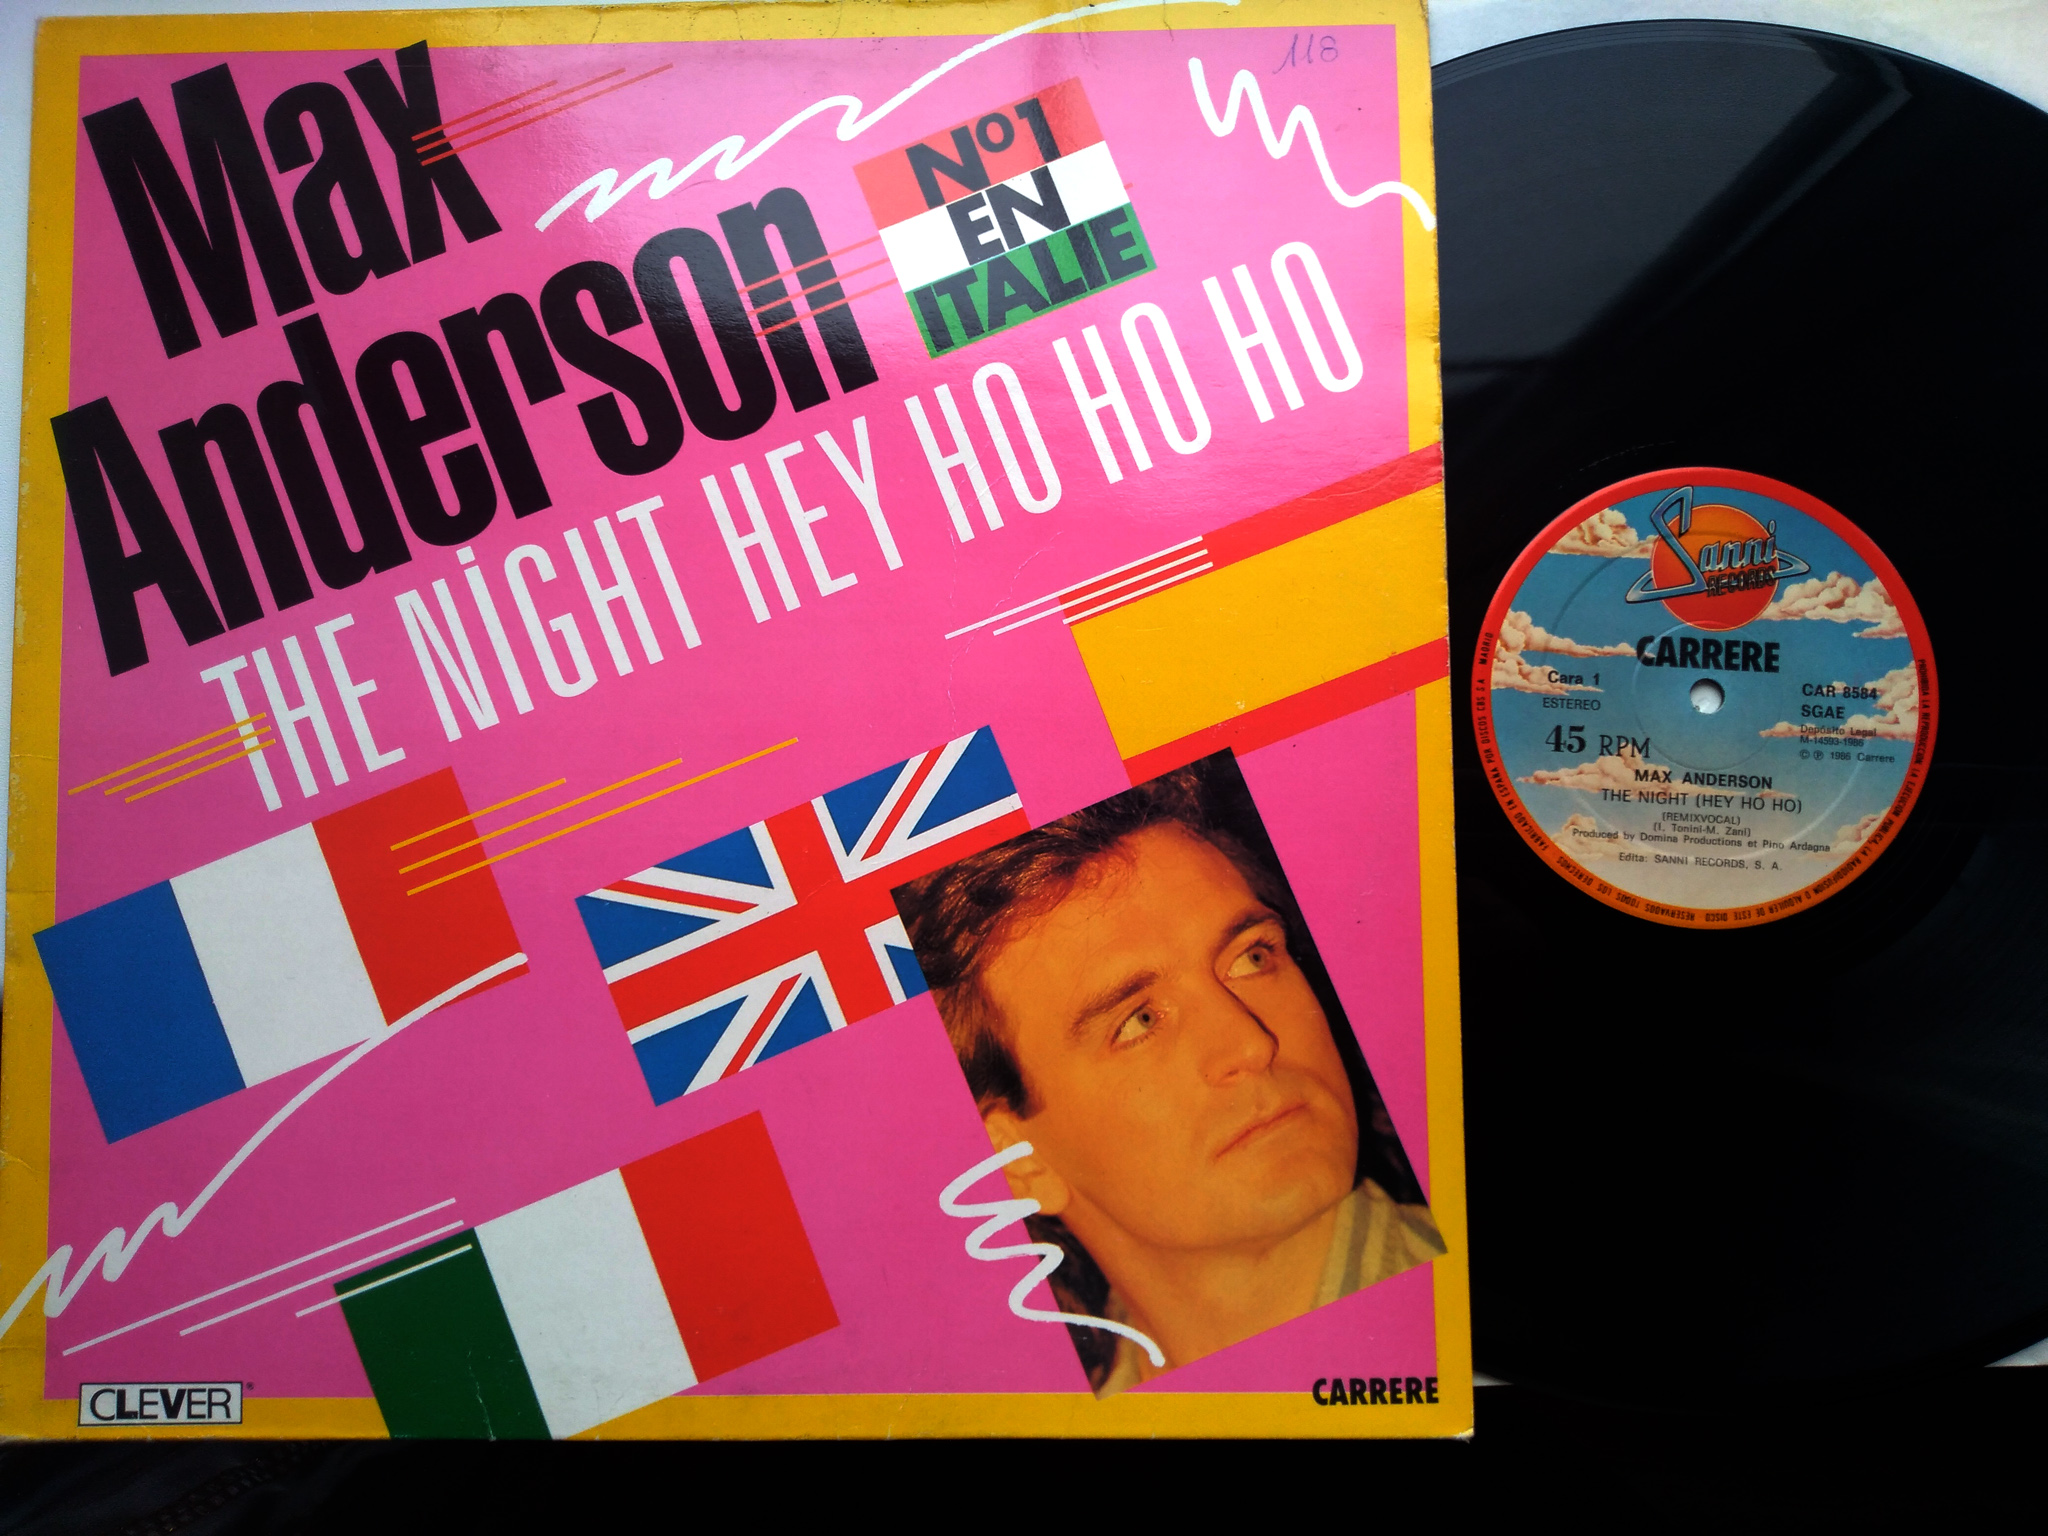 Max Anderson - The Night Hey Ho Ho Ho